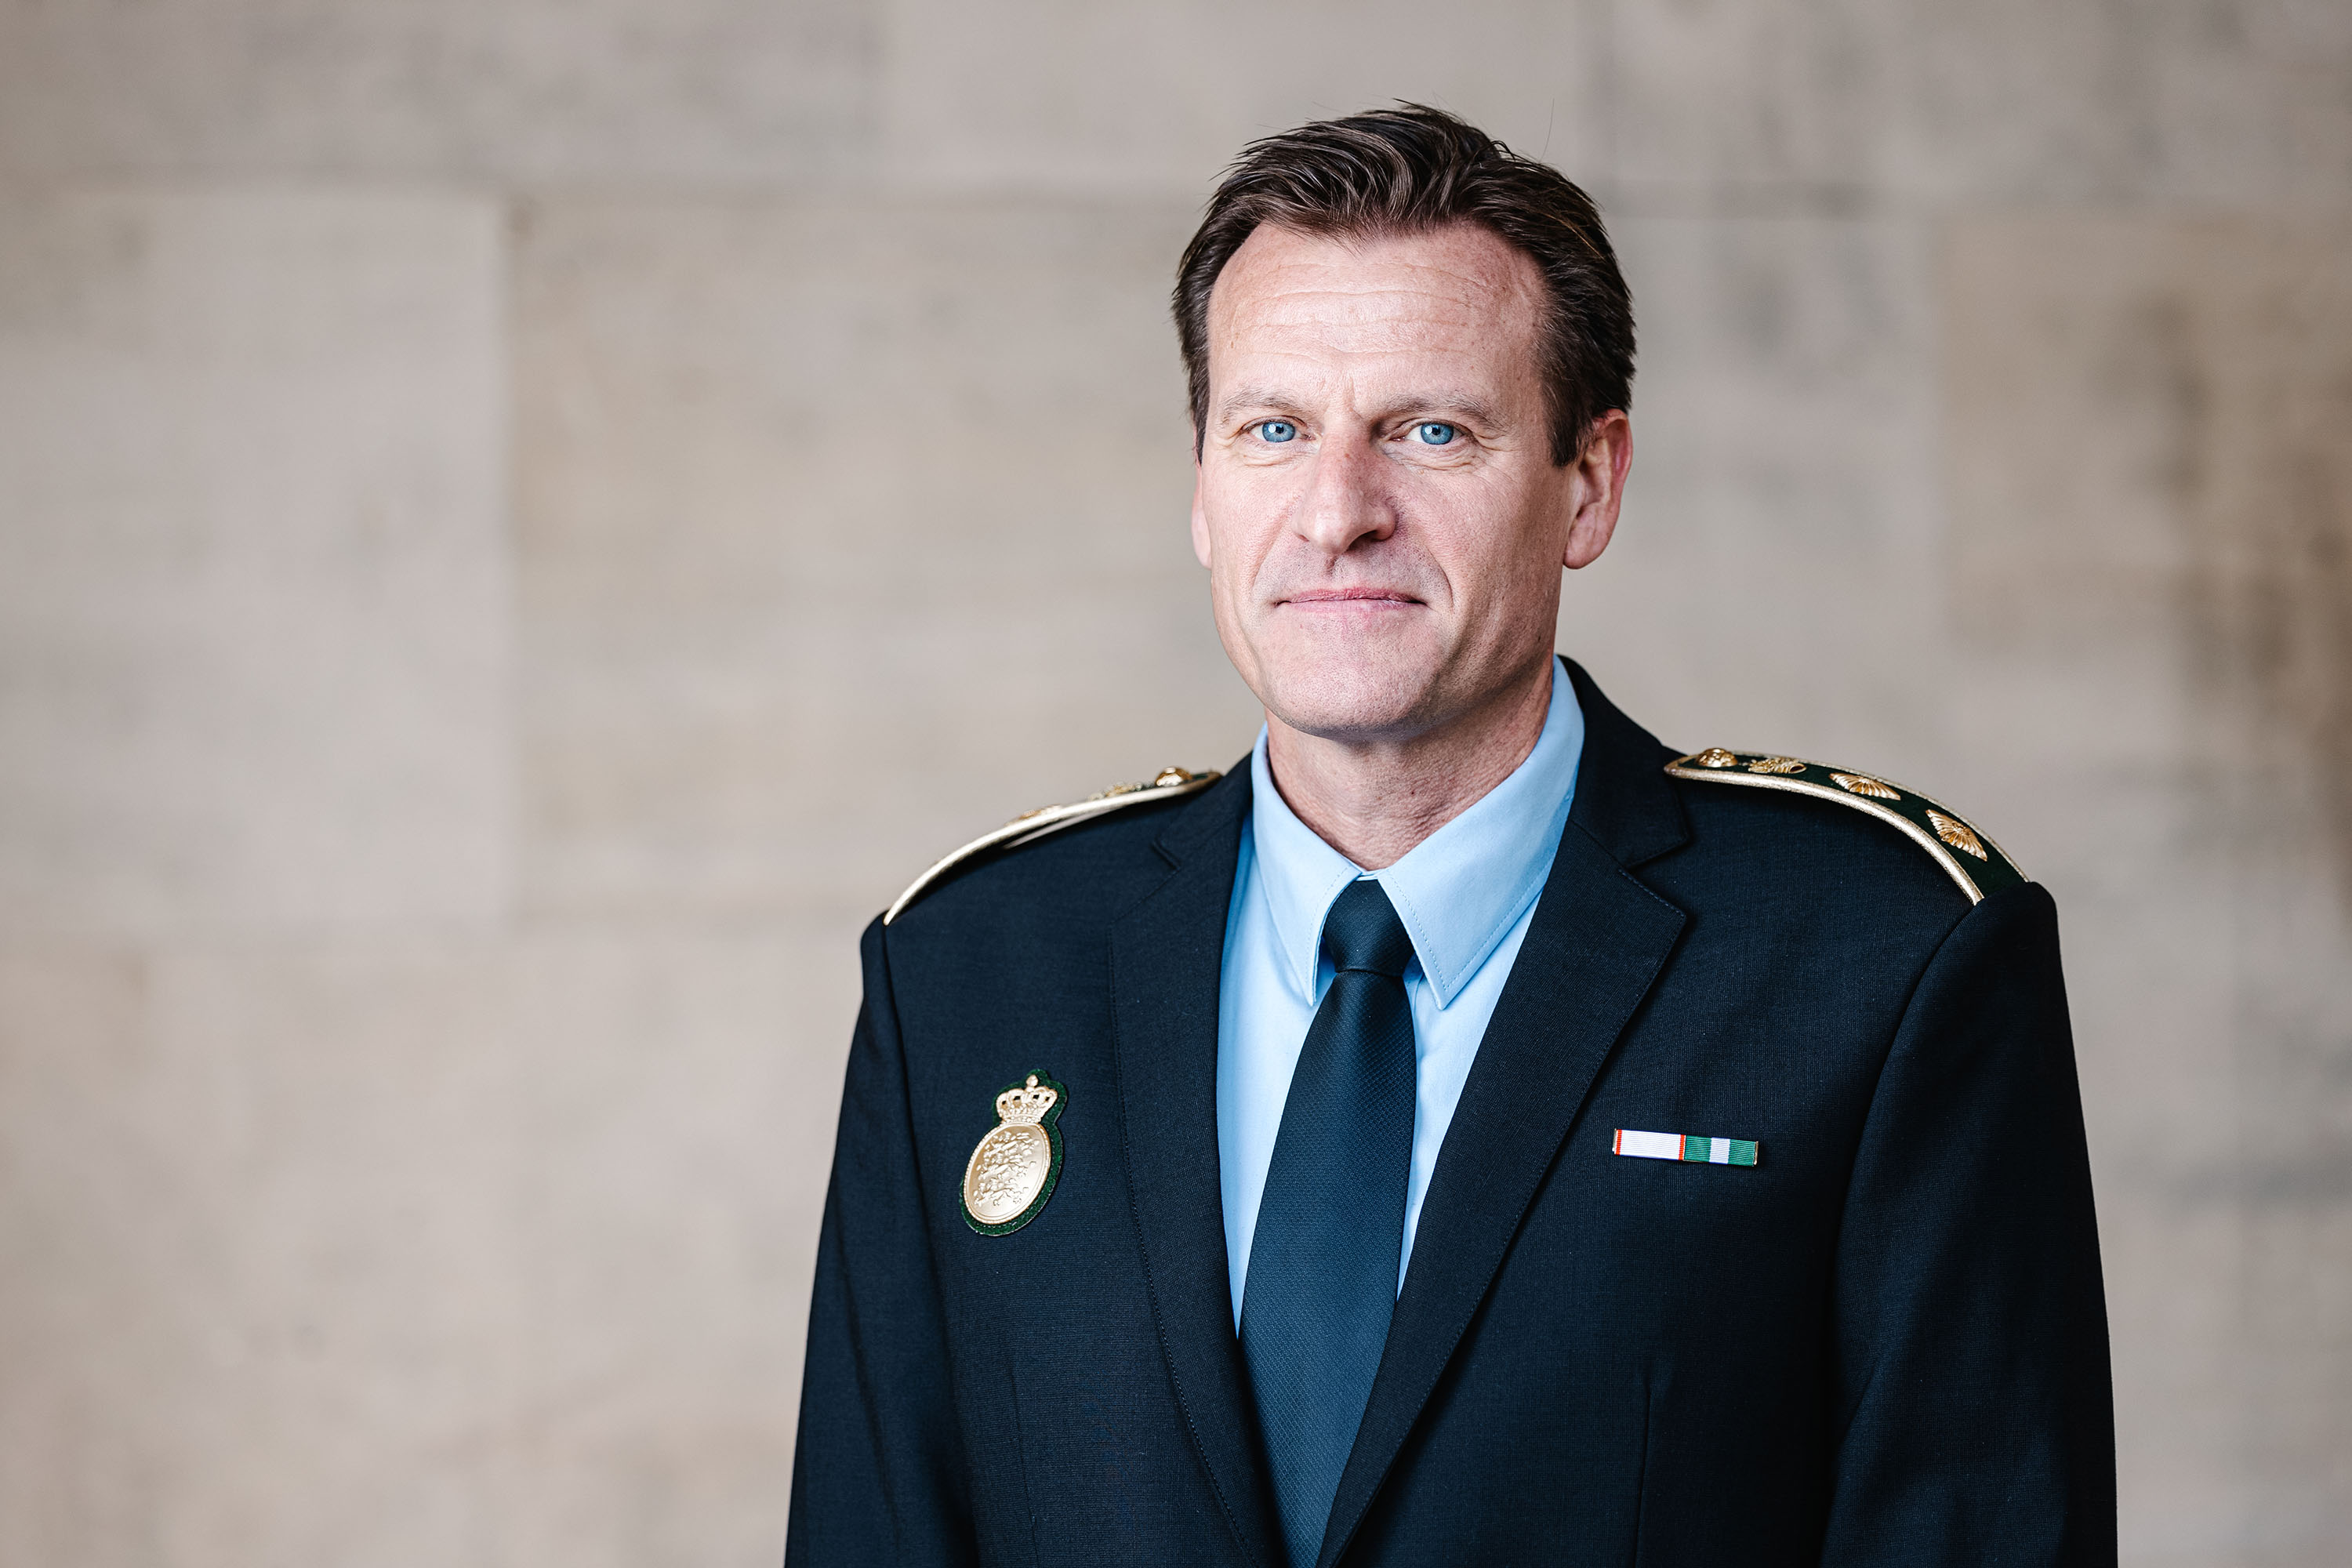 Politidirektør Frits VIlly Kjeldsen, Syd- og Sønderjyllands Politi